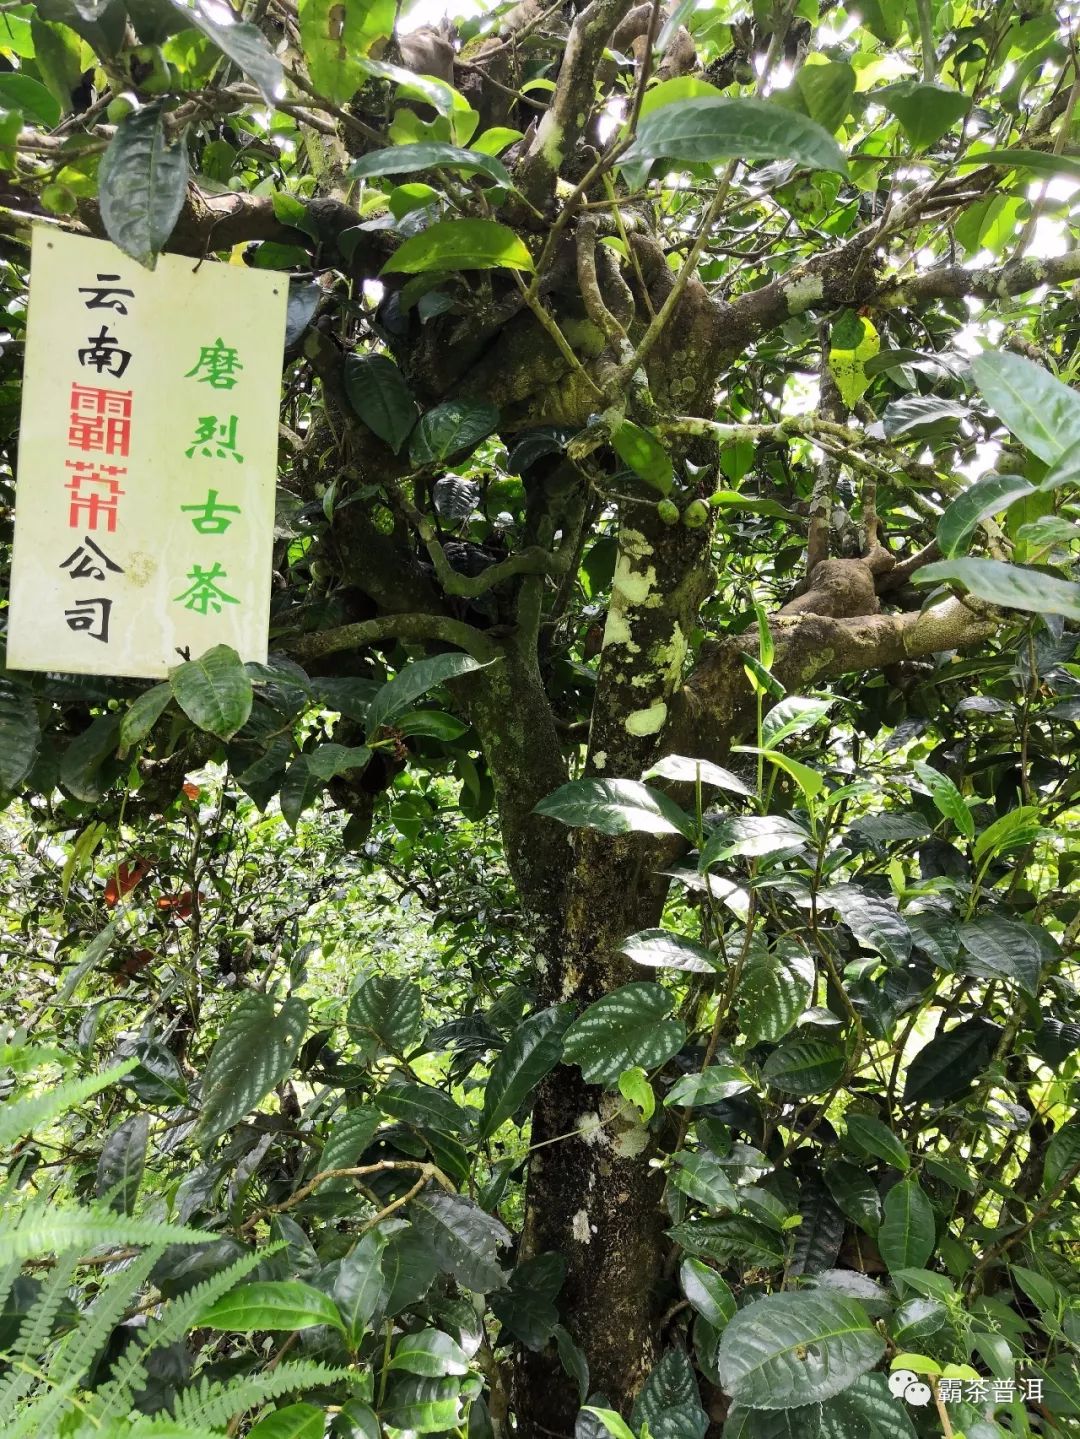 磨烈—清泉湖上竹里茶